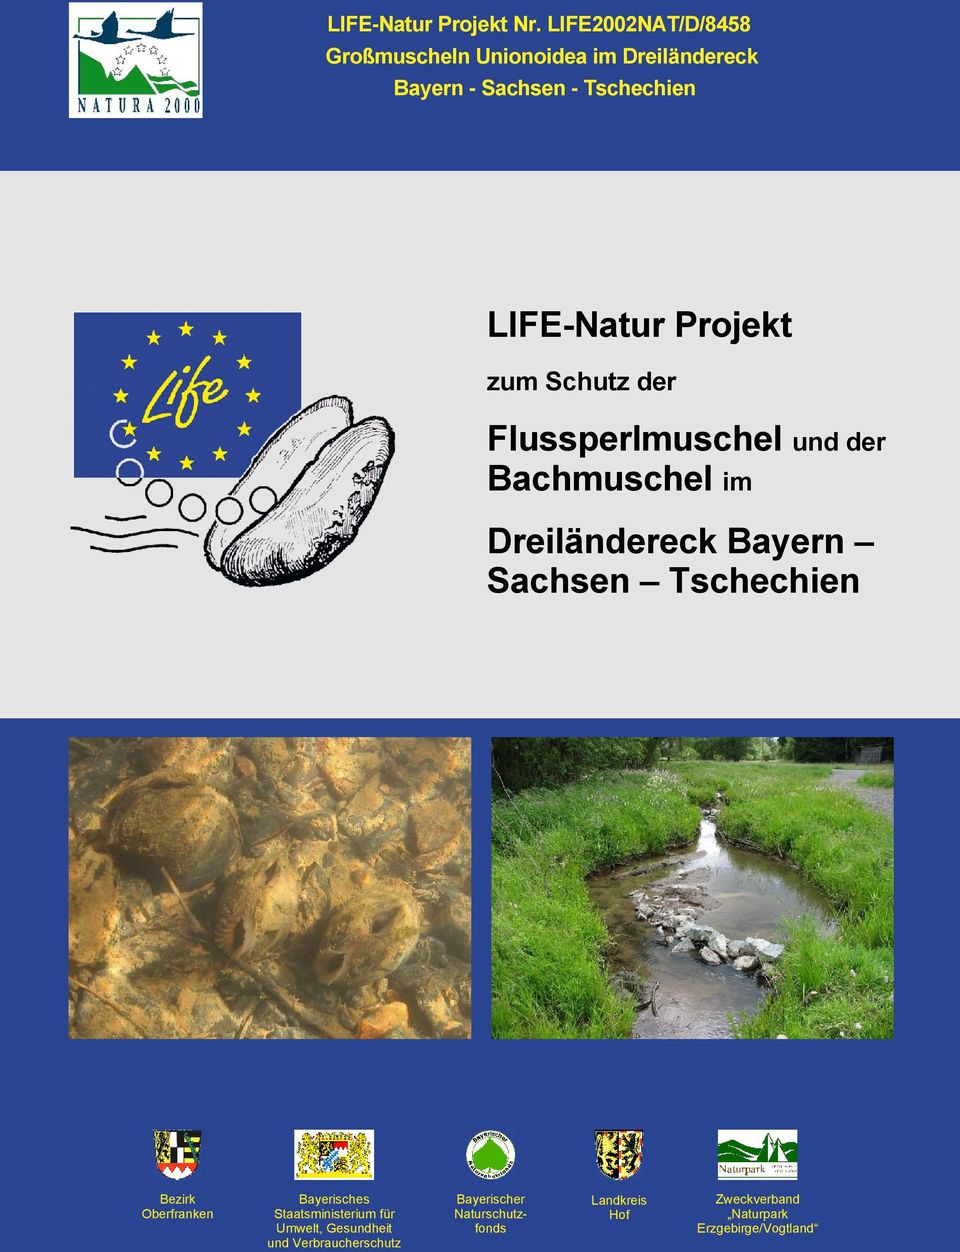 Sachsen Tschechien Bezirk Oberfranken Bayerisches Staatsministerium für Umwelt, Gesundheit